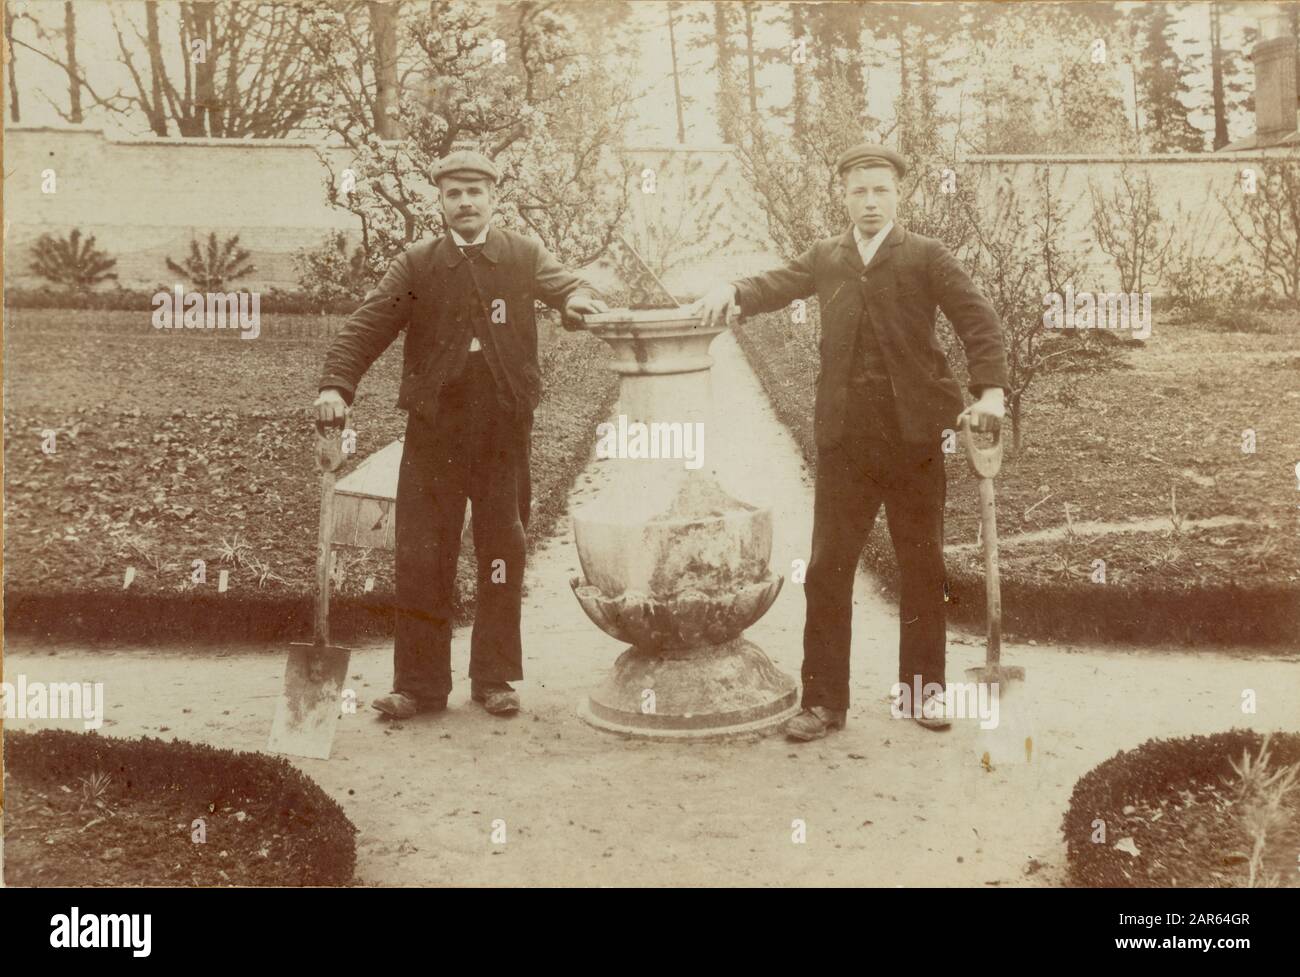 Les jardiniers édouardiens du groupe posent ensemble pour une photographie sur un chemin dans un jardin de cuisine bien entretenu et muré d'une grande maison de campagne, datée de 1909, au Royaume-Uni Banque D'Images